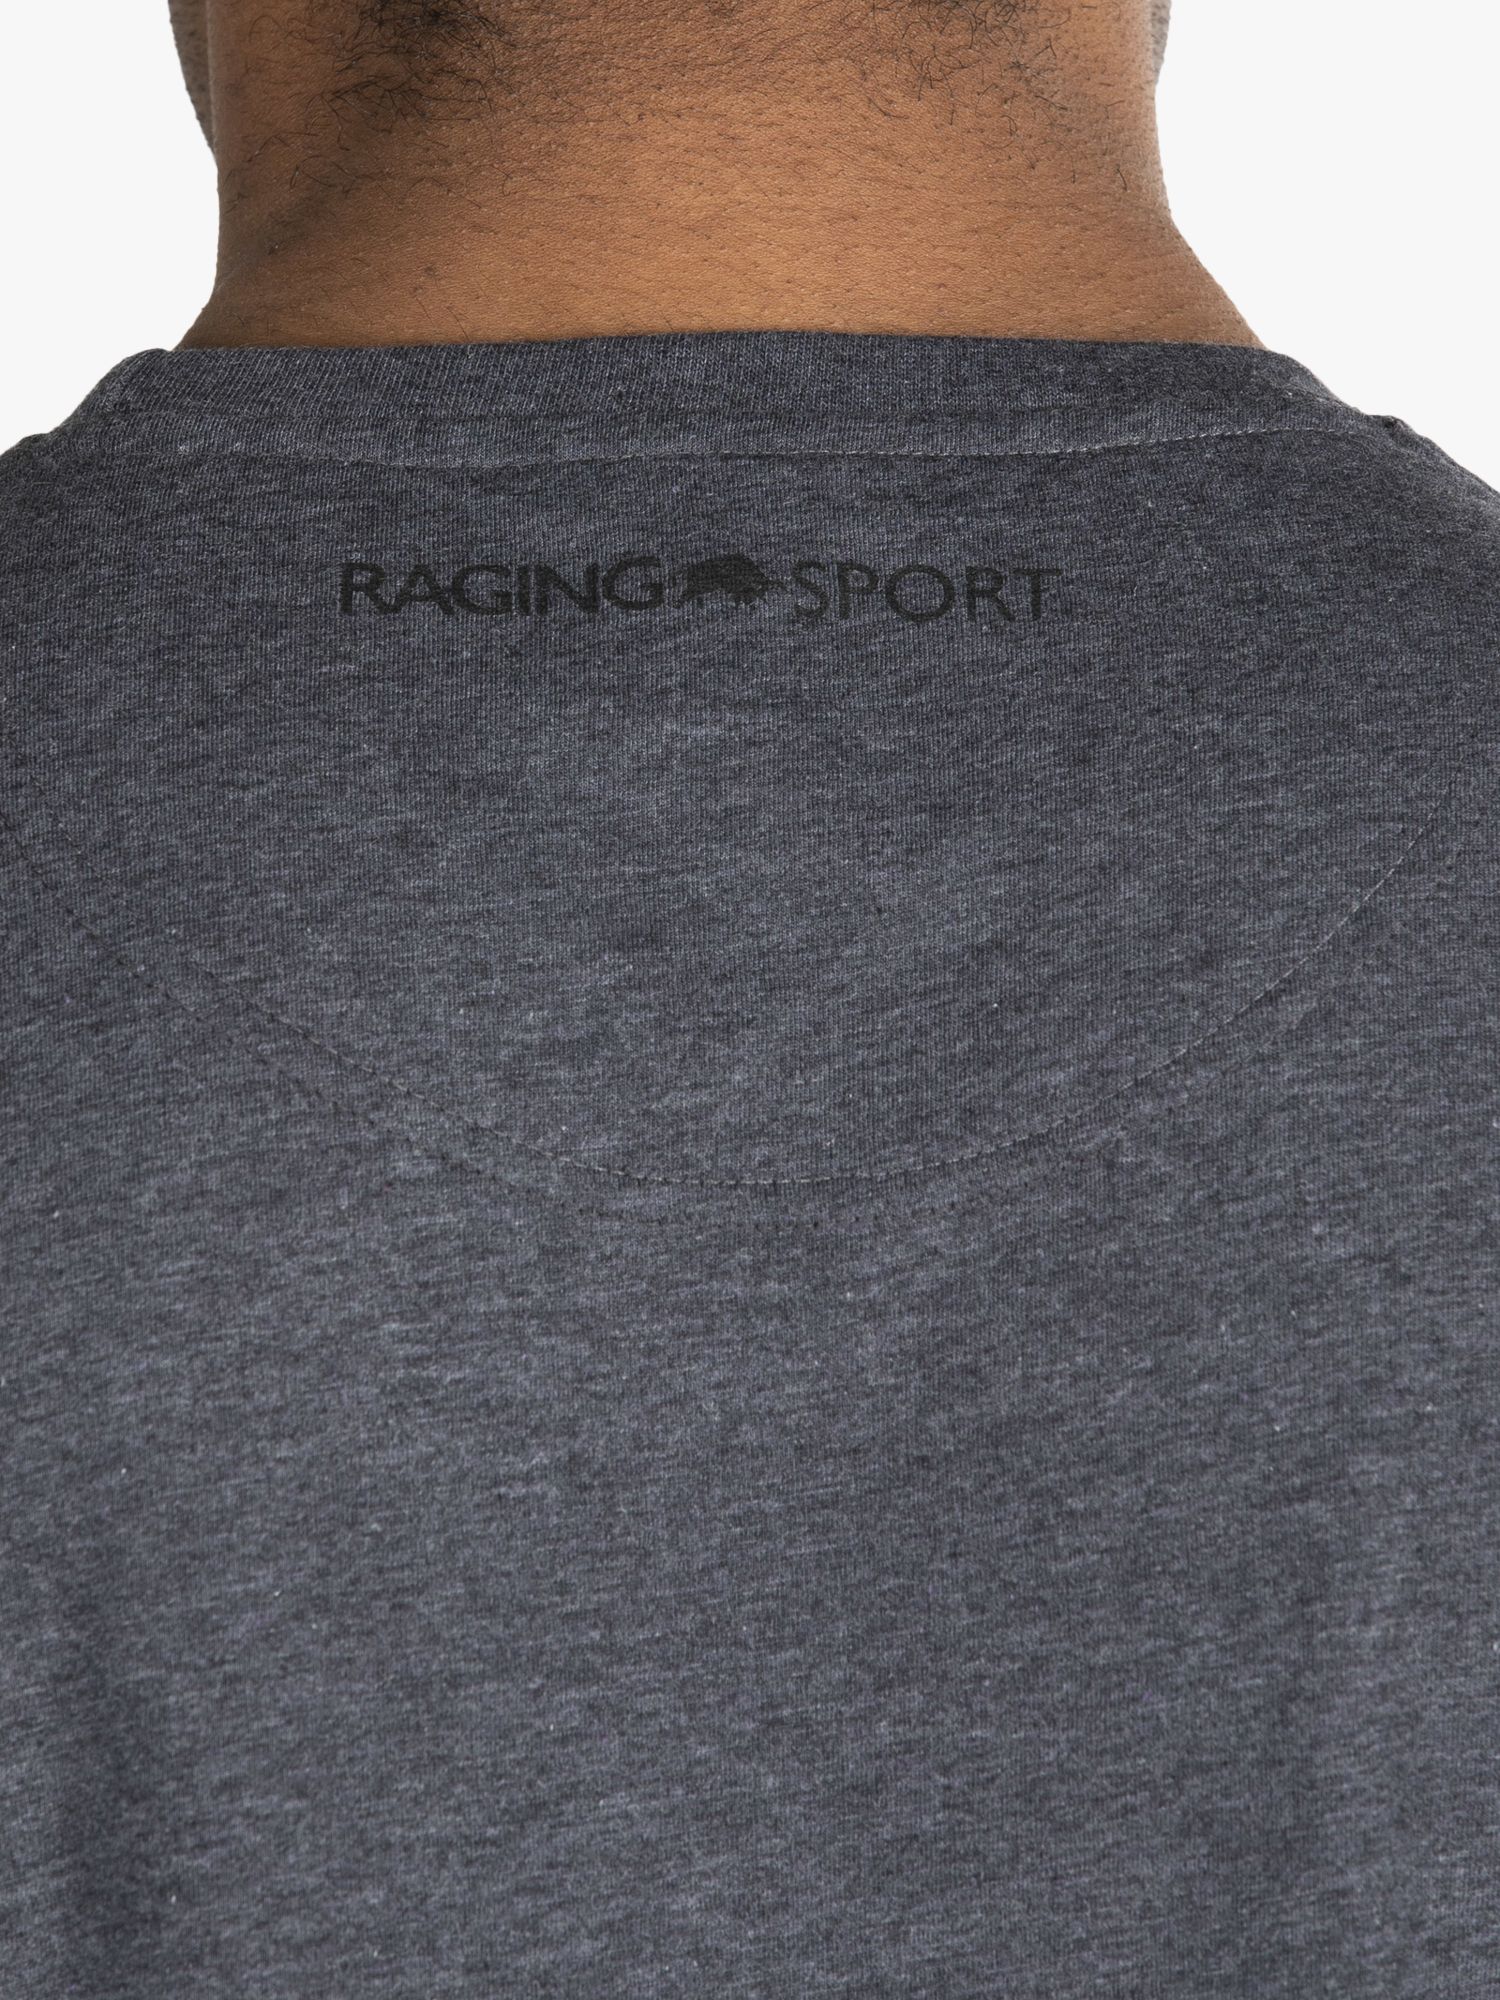 Raging Bull Casual Sport Logo T-Shirt, Dark Grey Marl, XS